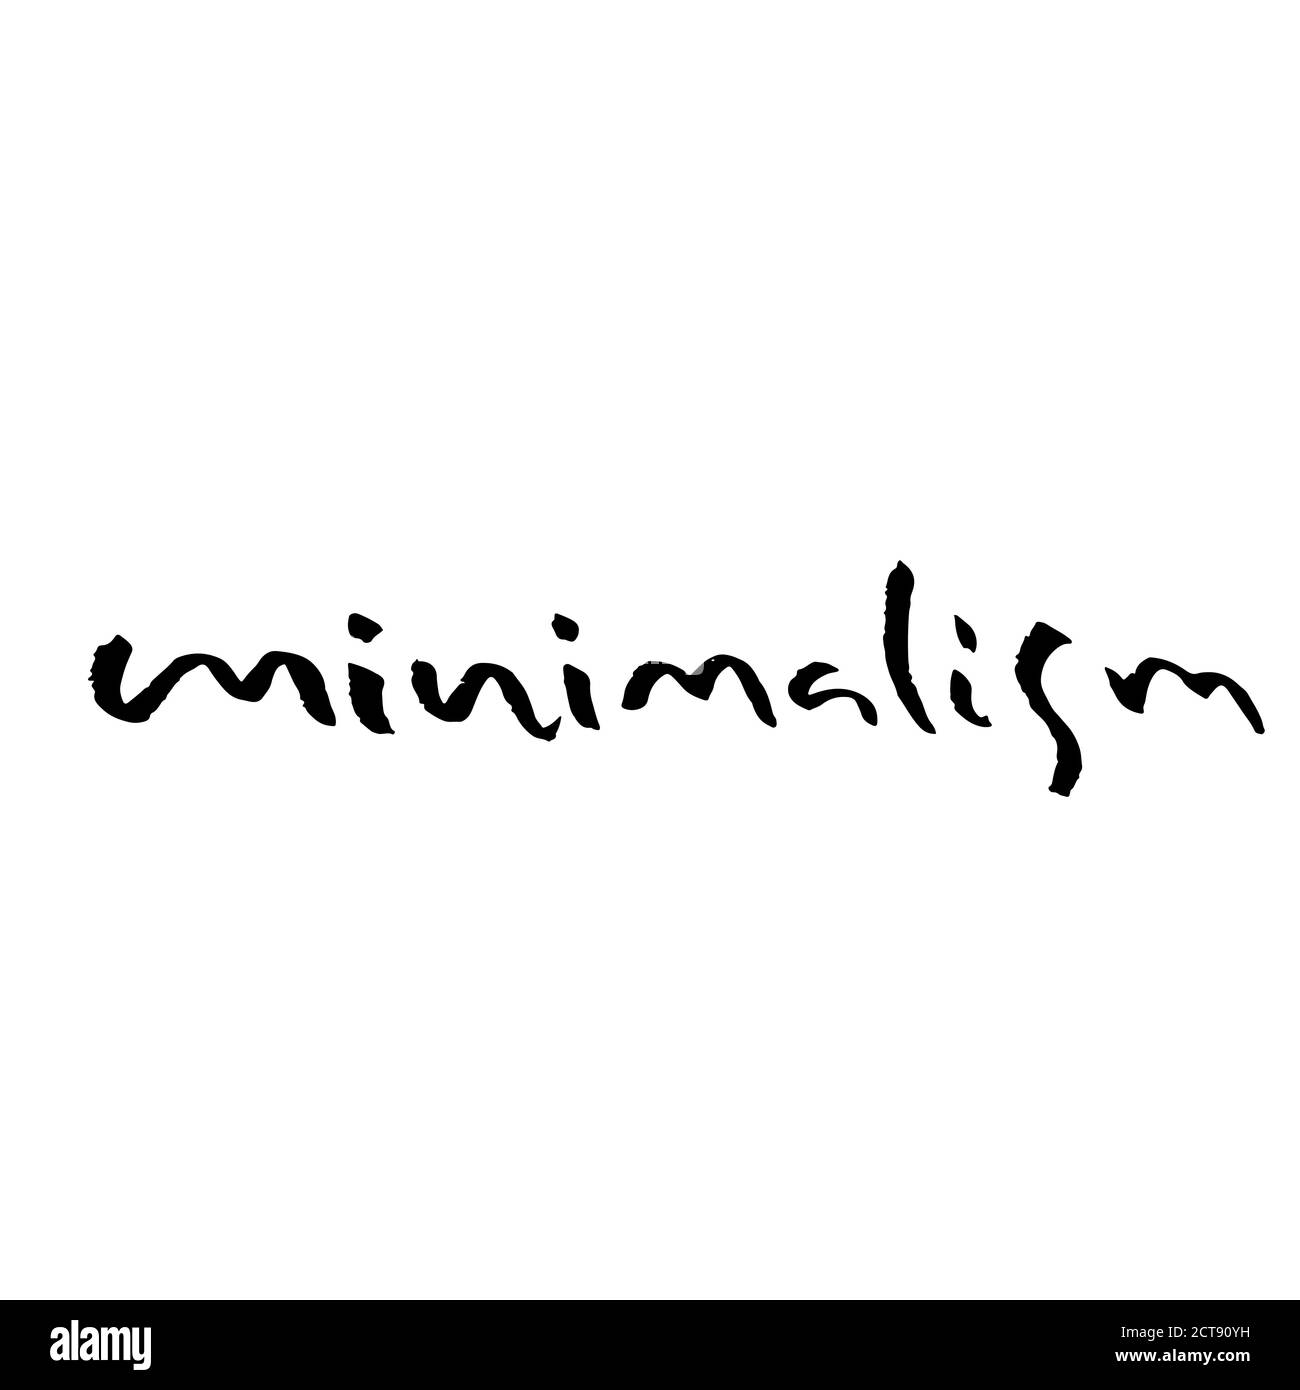 Minimalismus. Handgezeichnete moderne Pinselbeschriftung. Typografie-Banner. Vektorgrafik Tinte. Stock Vektor